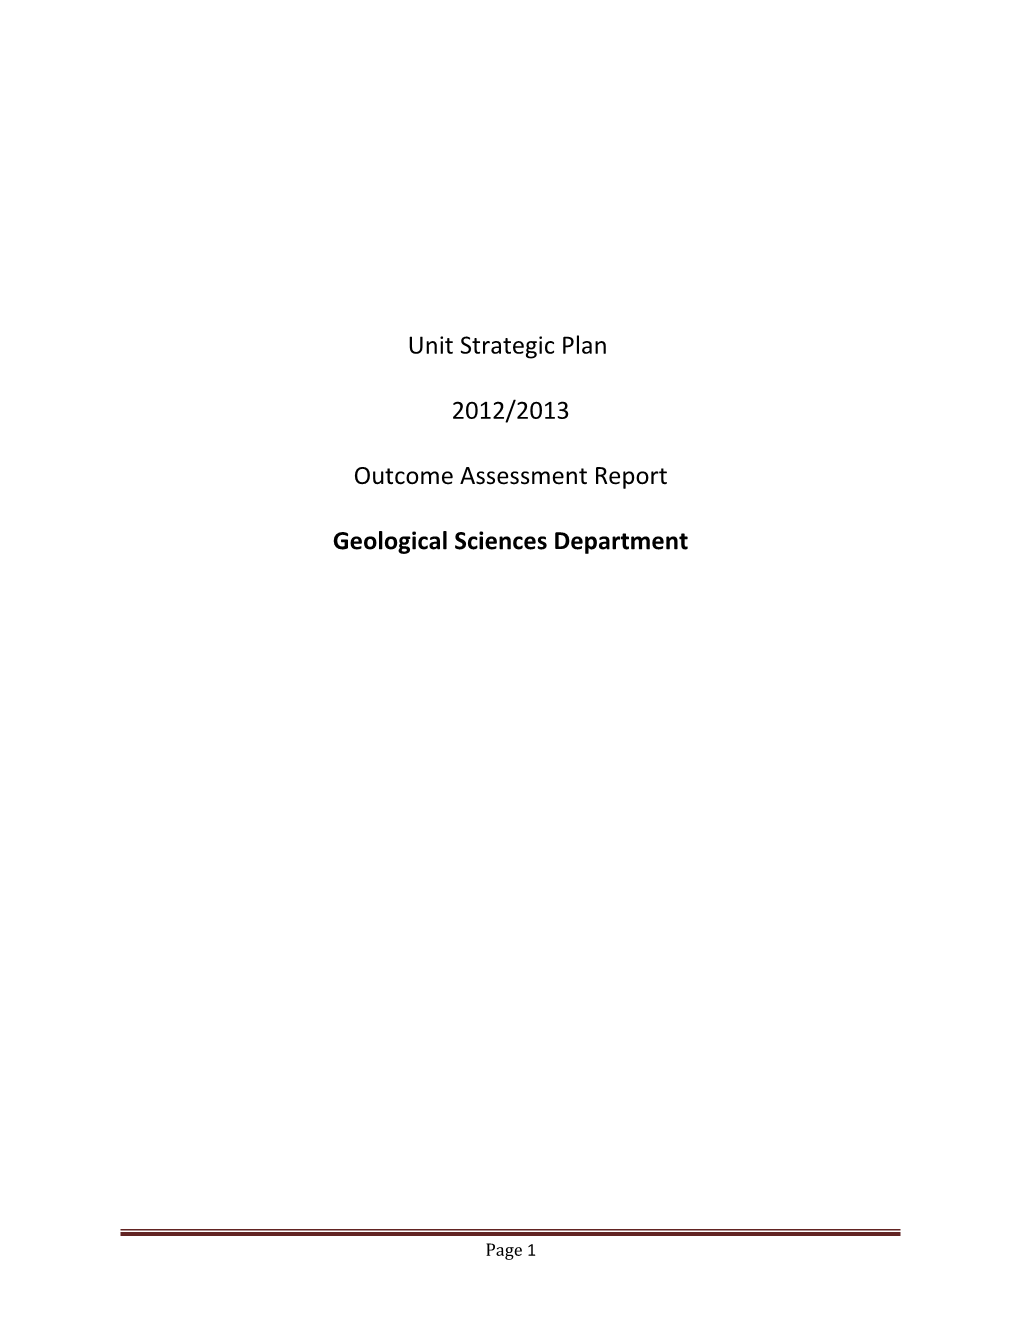 Unit Strategic Planning Report